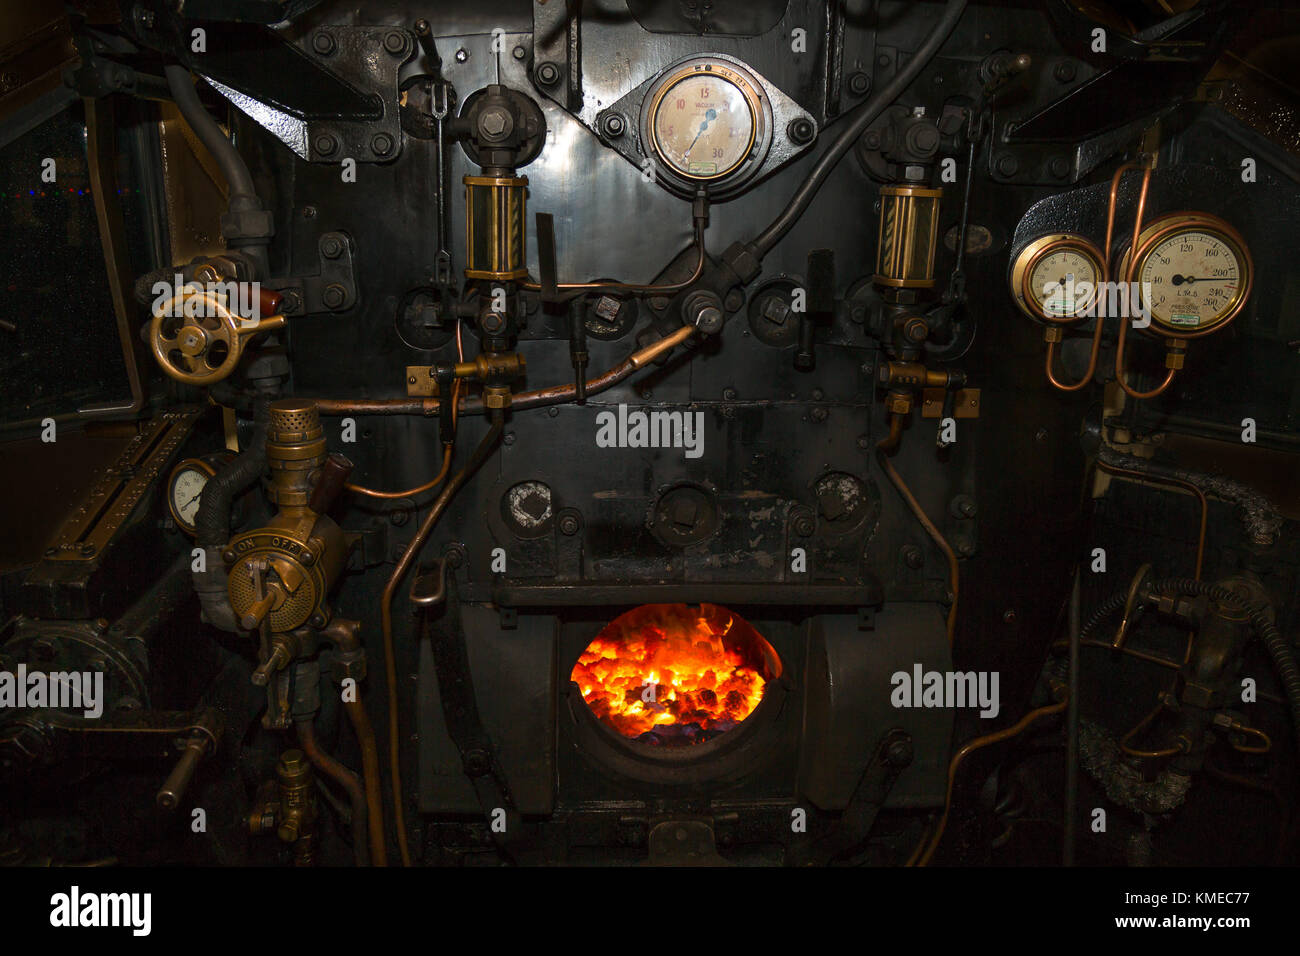 Photo de nuit à l'intérieur de la cabine de locomotive à vapeur, à l'incendie allumé dans la chambre de la plaque arrière de la chaudière. Les soupapes, les tiges, les tuyaux, les manomètres toutes visibles Banque D'Images